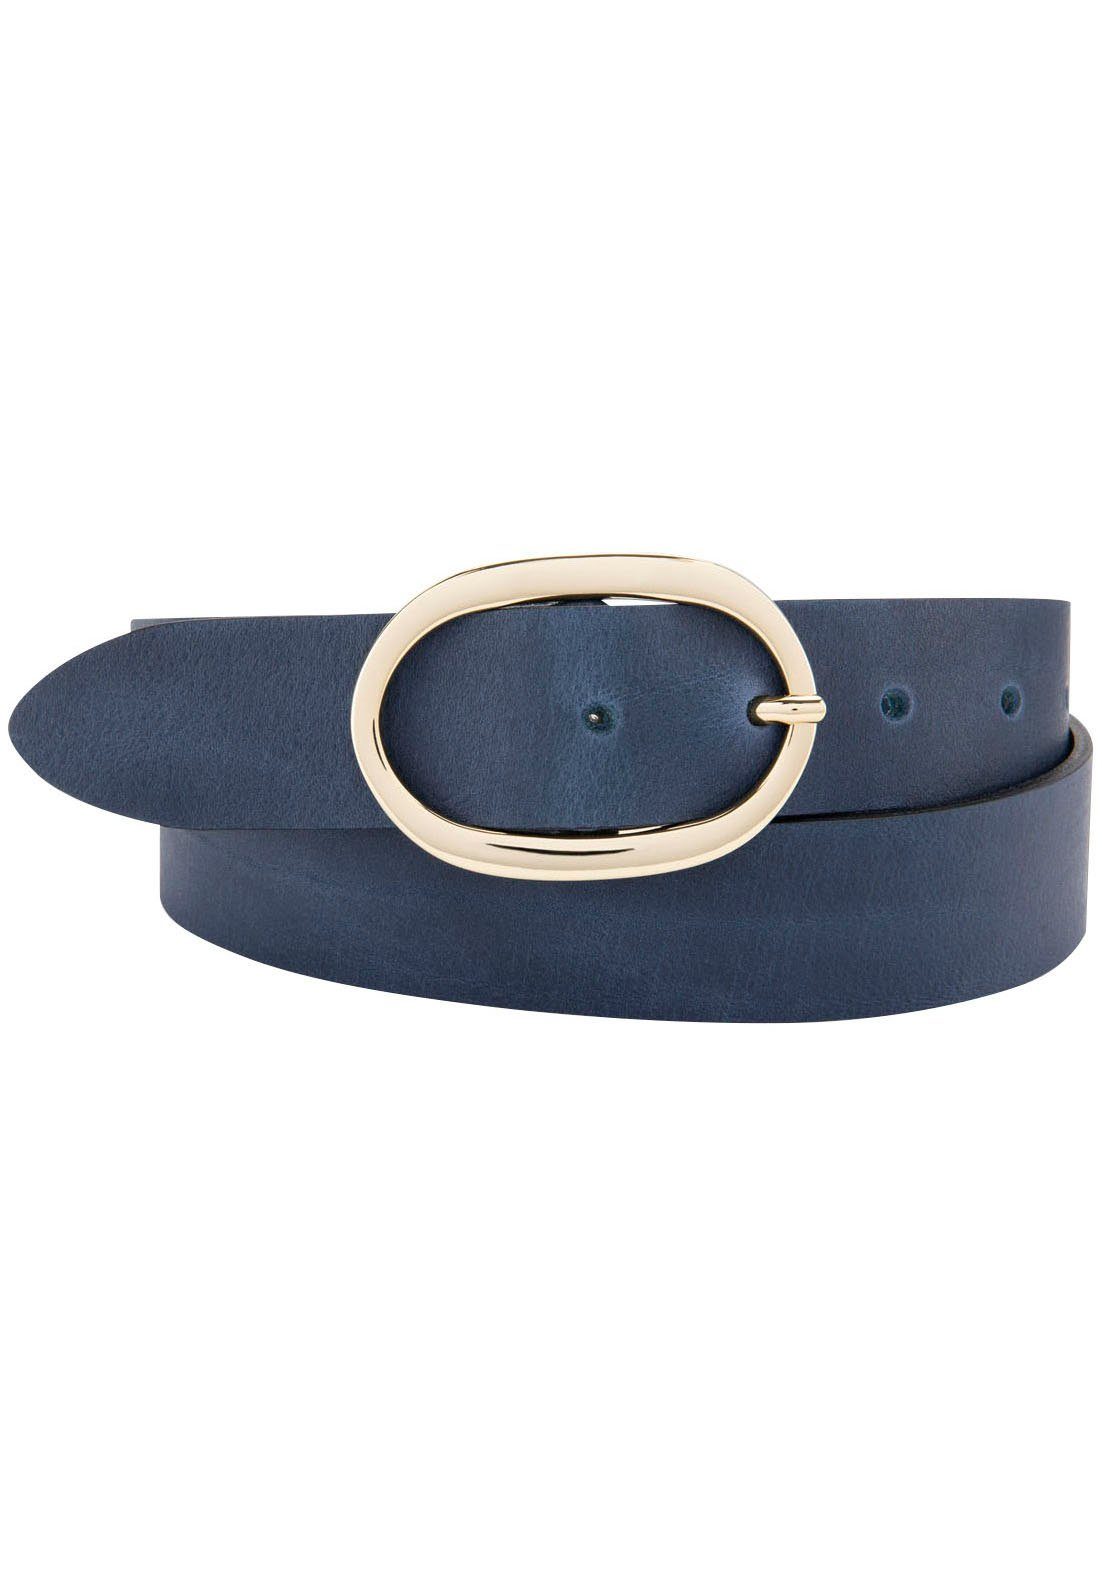 dunkelblau mit Ovalschließe BERND GÖTZ aus Vollrind goldener eleganter Ledergürtel Ledergürtel